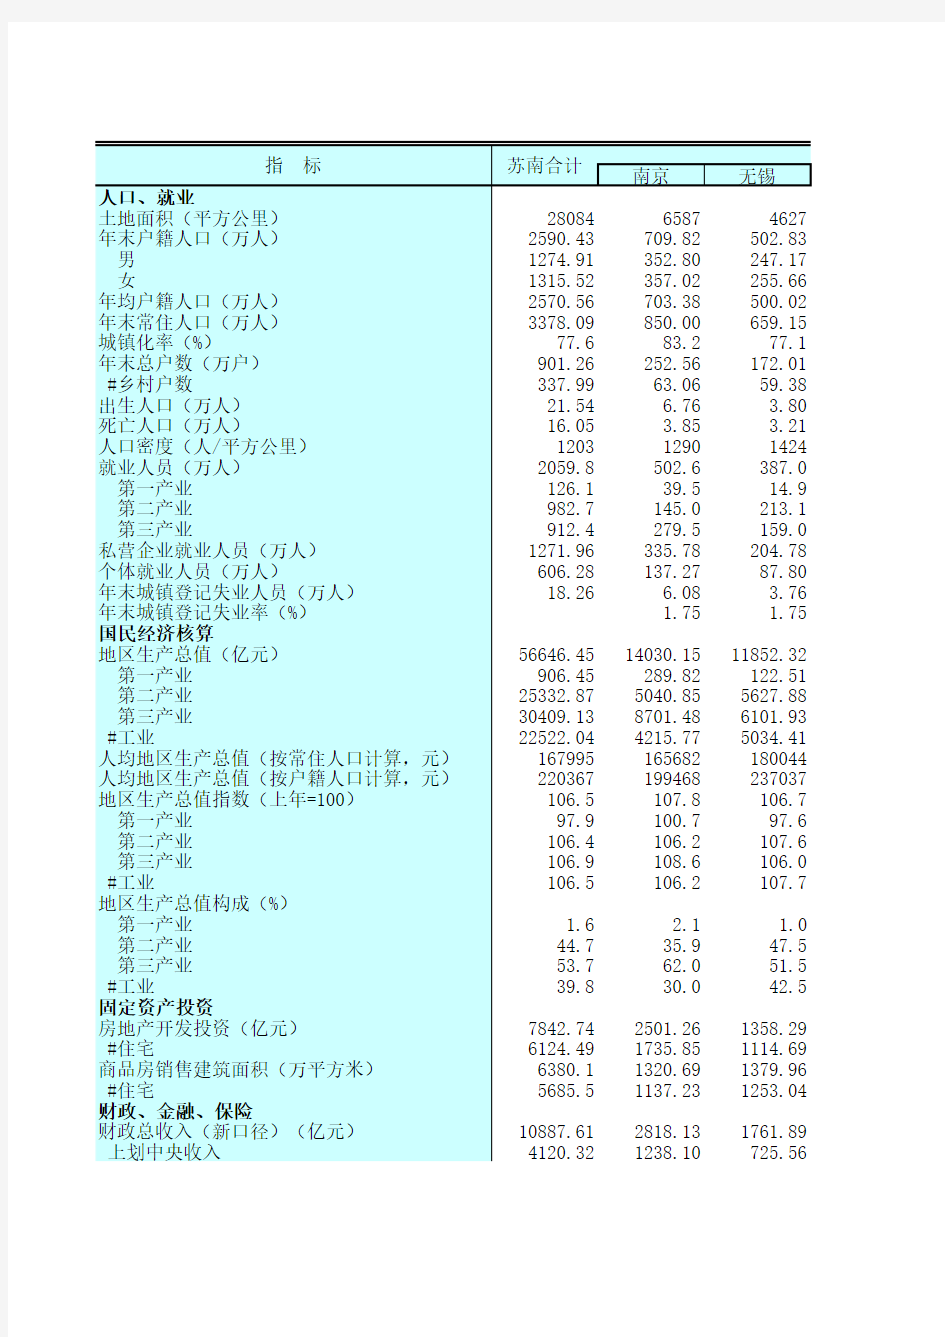 江苏统计年鉴2020社会经济发展指标：三大区域经济社会基本情况(2019年)